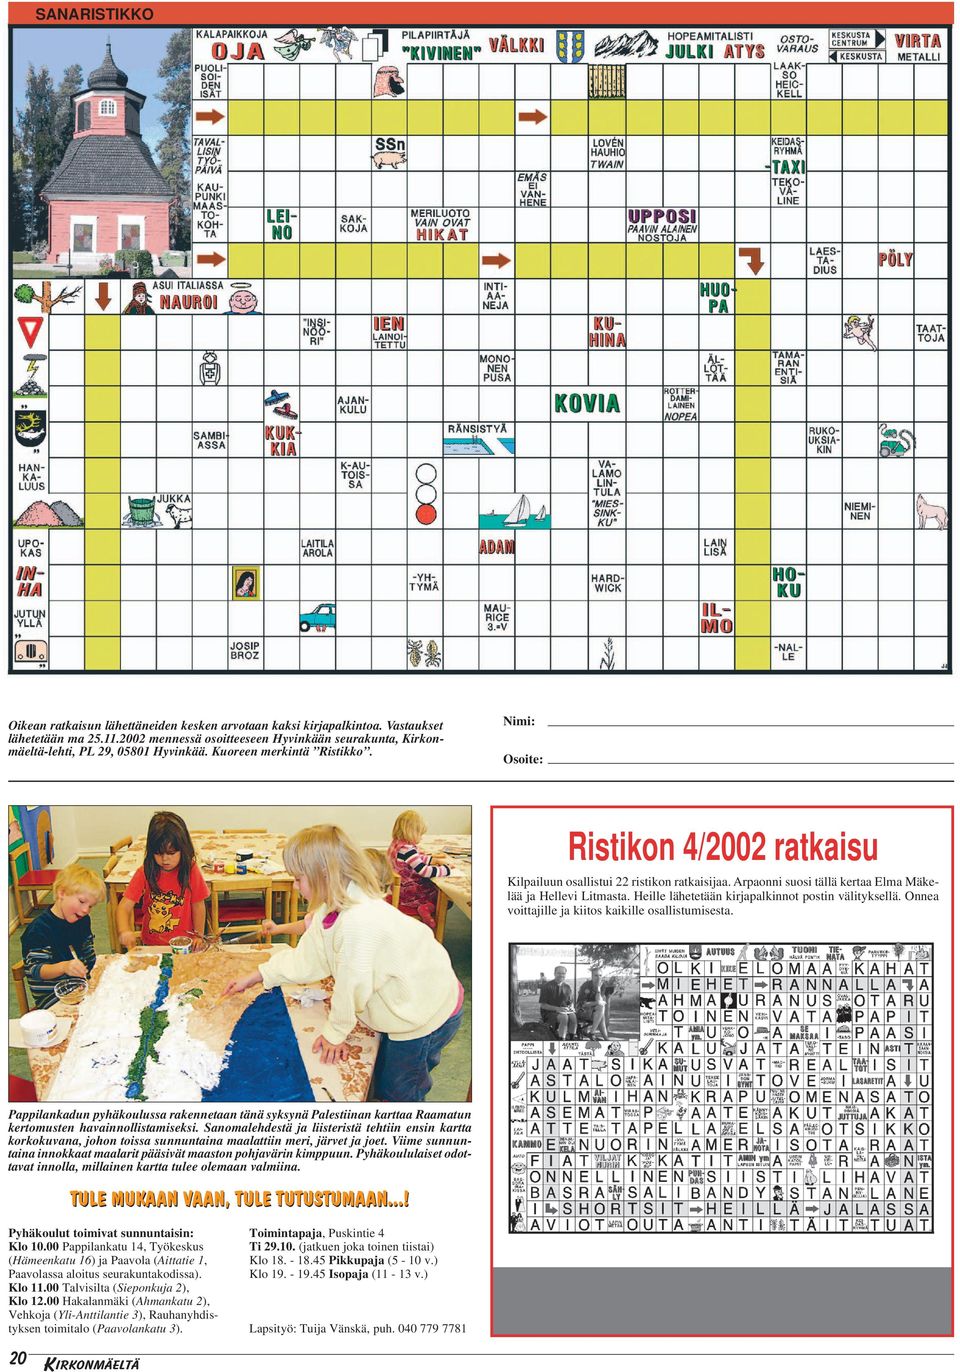 Nimi: Osoite: Ristikon 4/2002 ratkaisu Kilpailuun osallistui 22 ristikon ratkaisijaa. Arpaonni suosi tällä kertaa Elma Mäkelää ja Hellevi Litmasta.